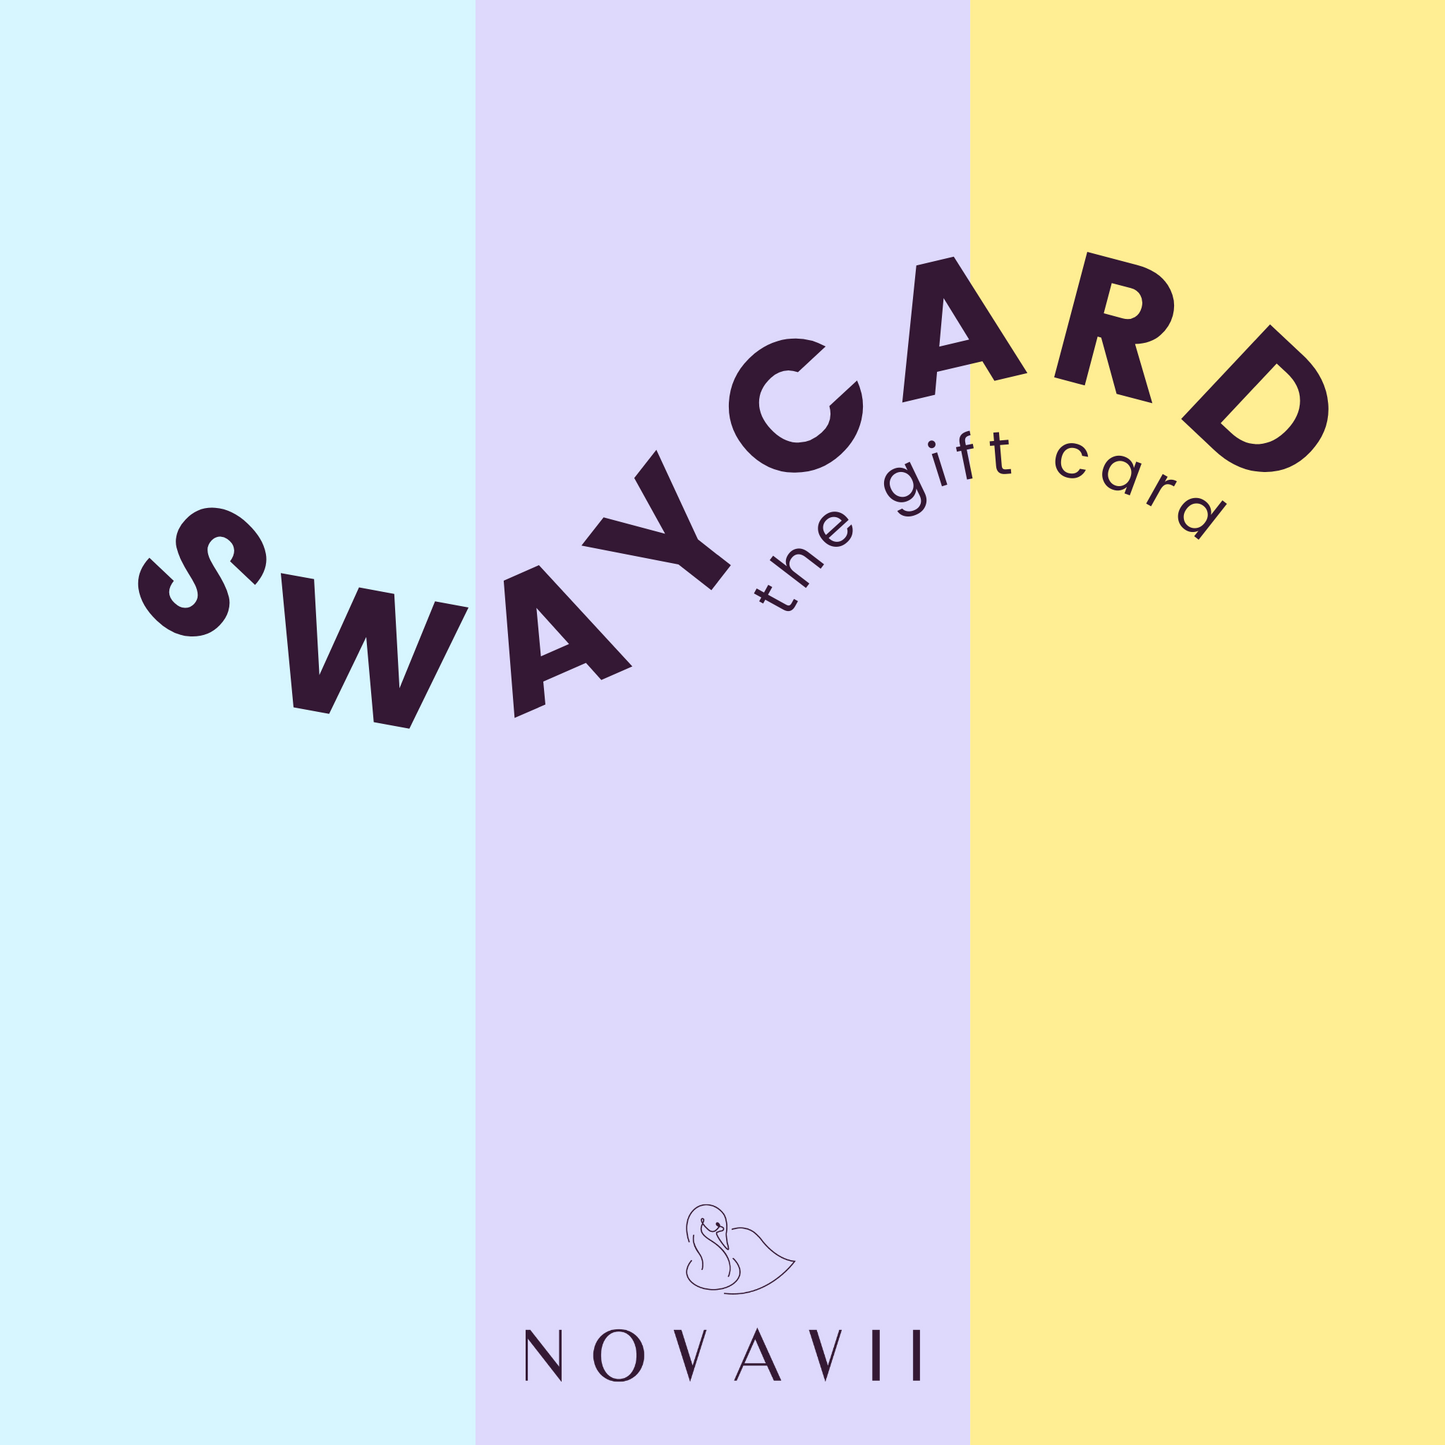 The Swaycard